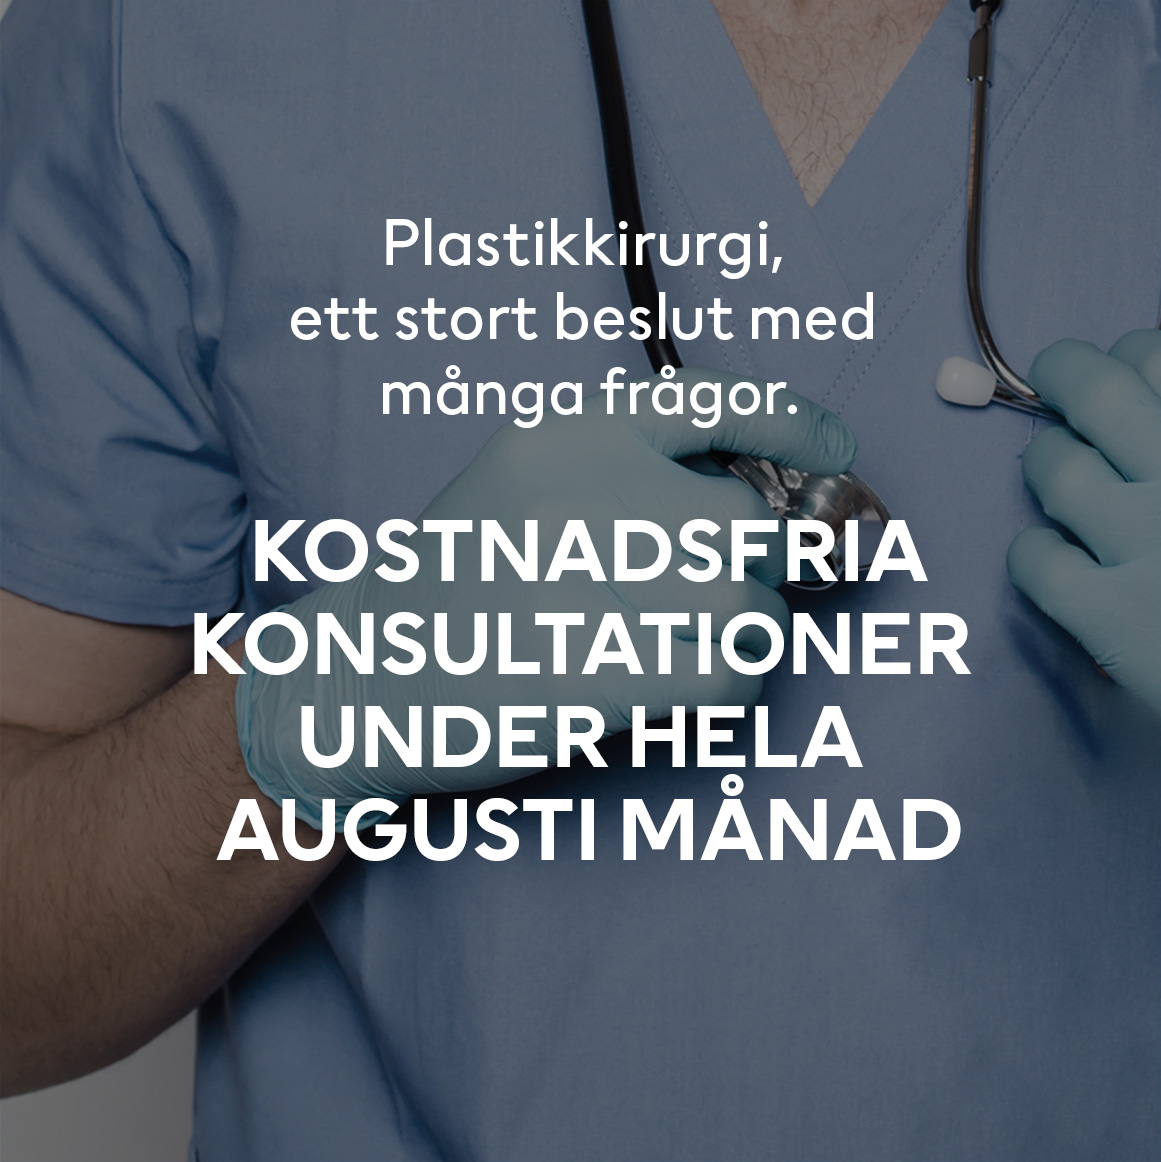 Kostnadsfri konsultation plastikkirurgi – augusti månad!